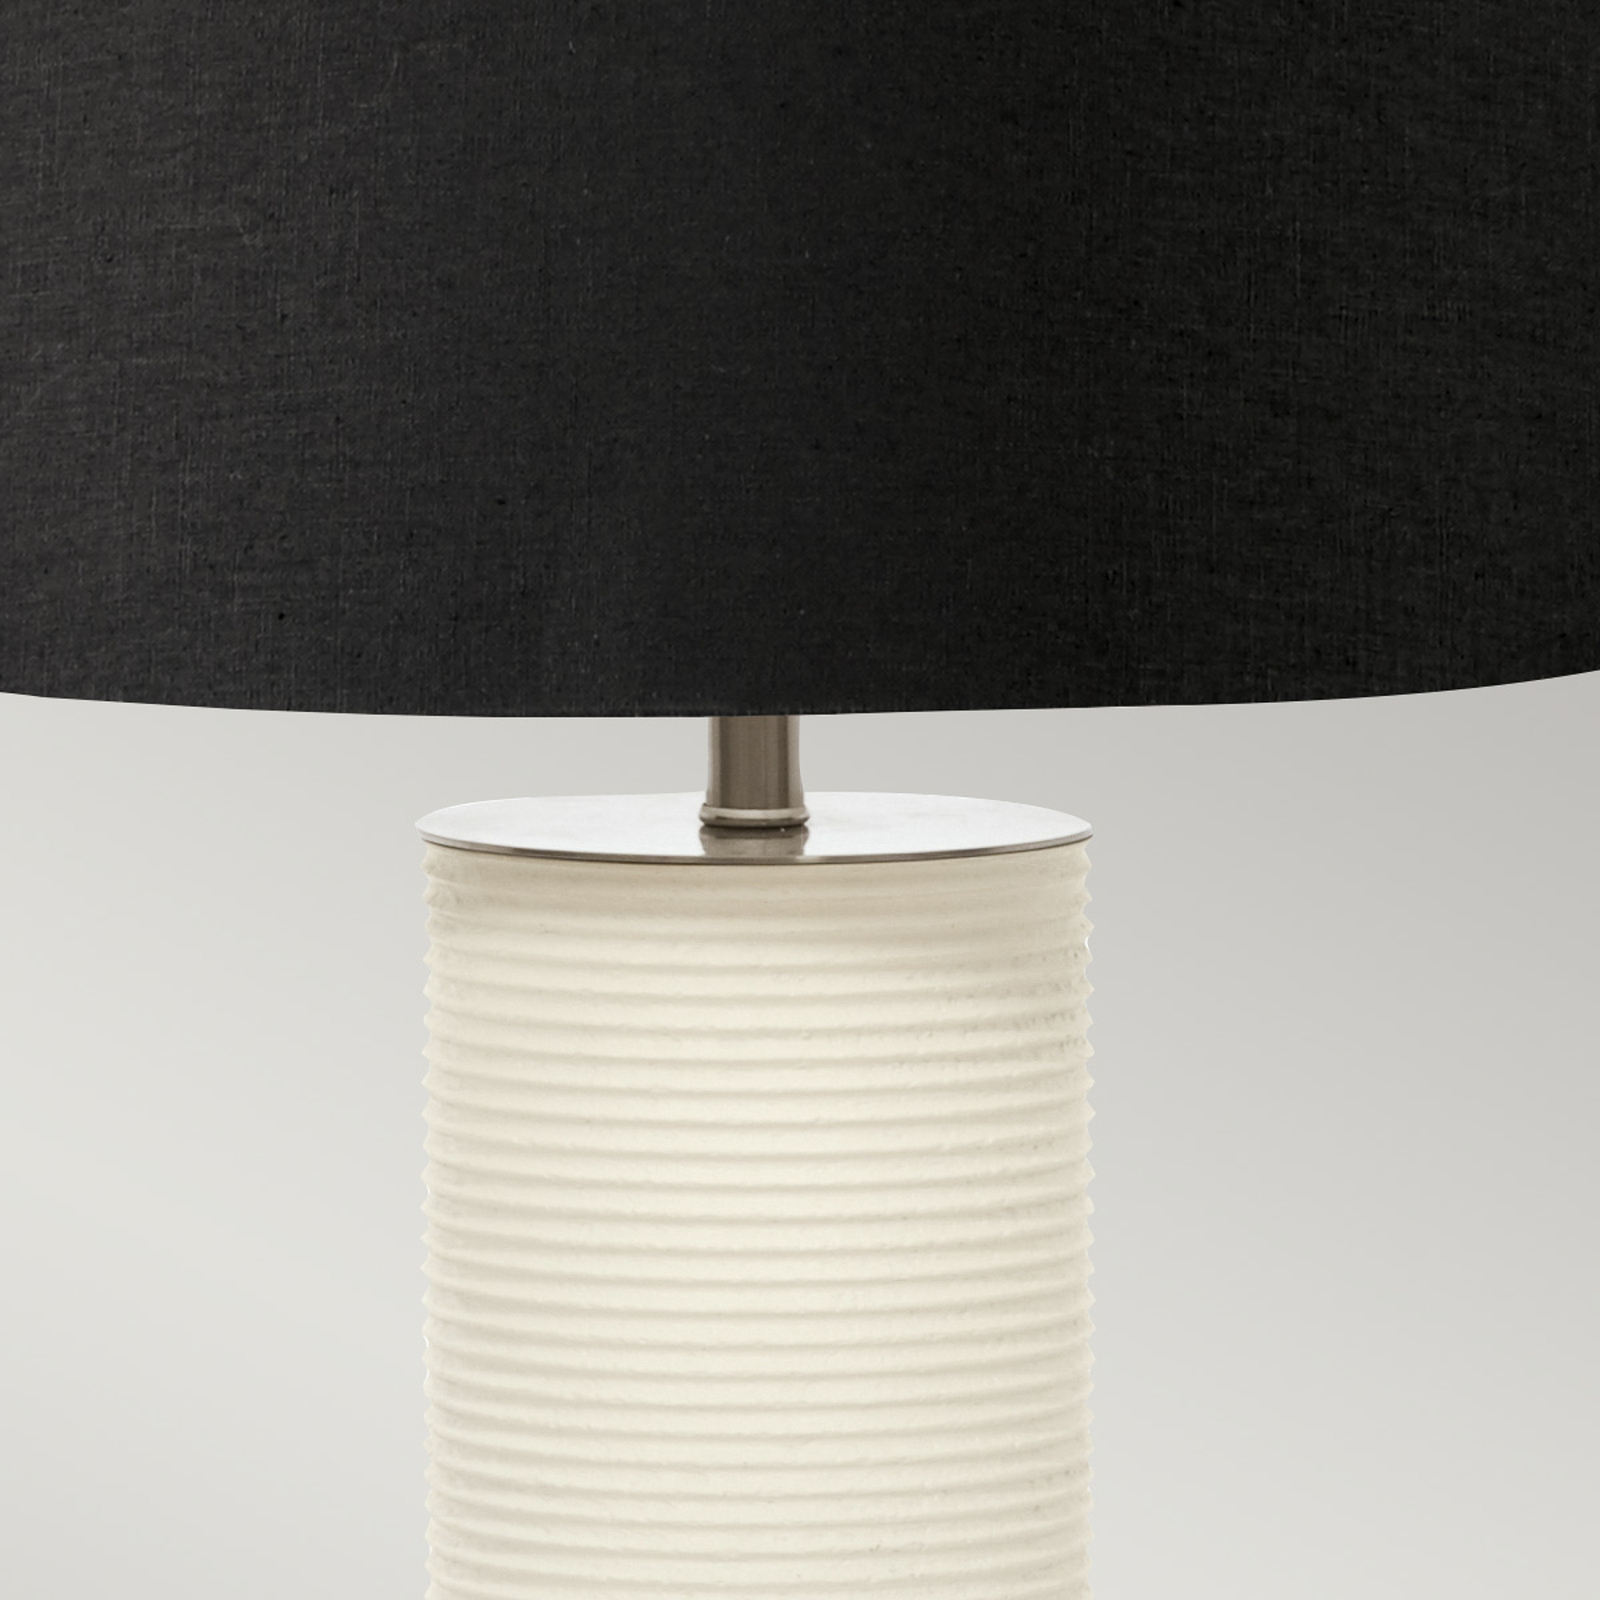 Textil asztali világítás Ripple fehér/búra fekete